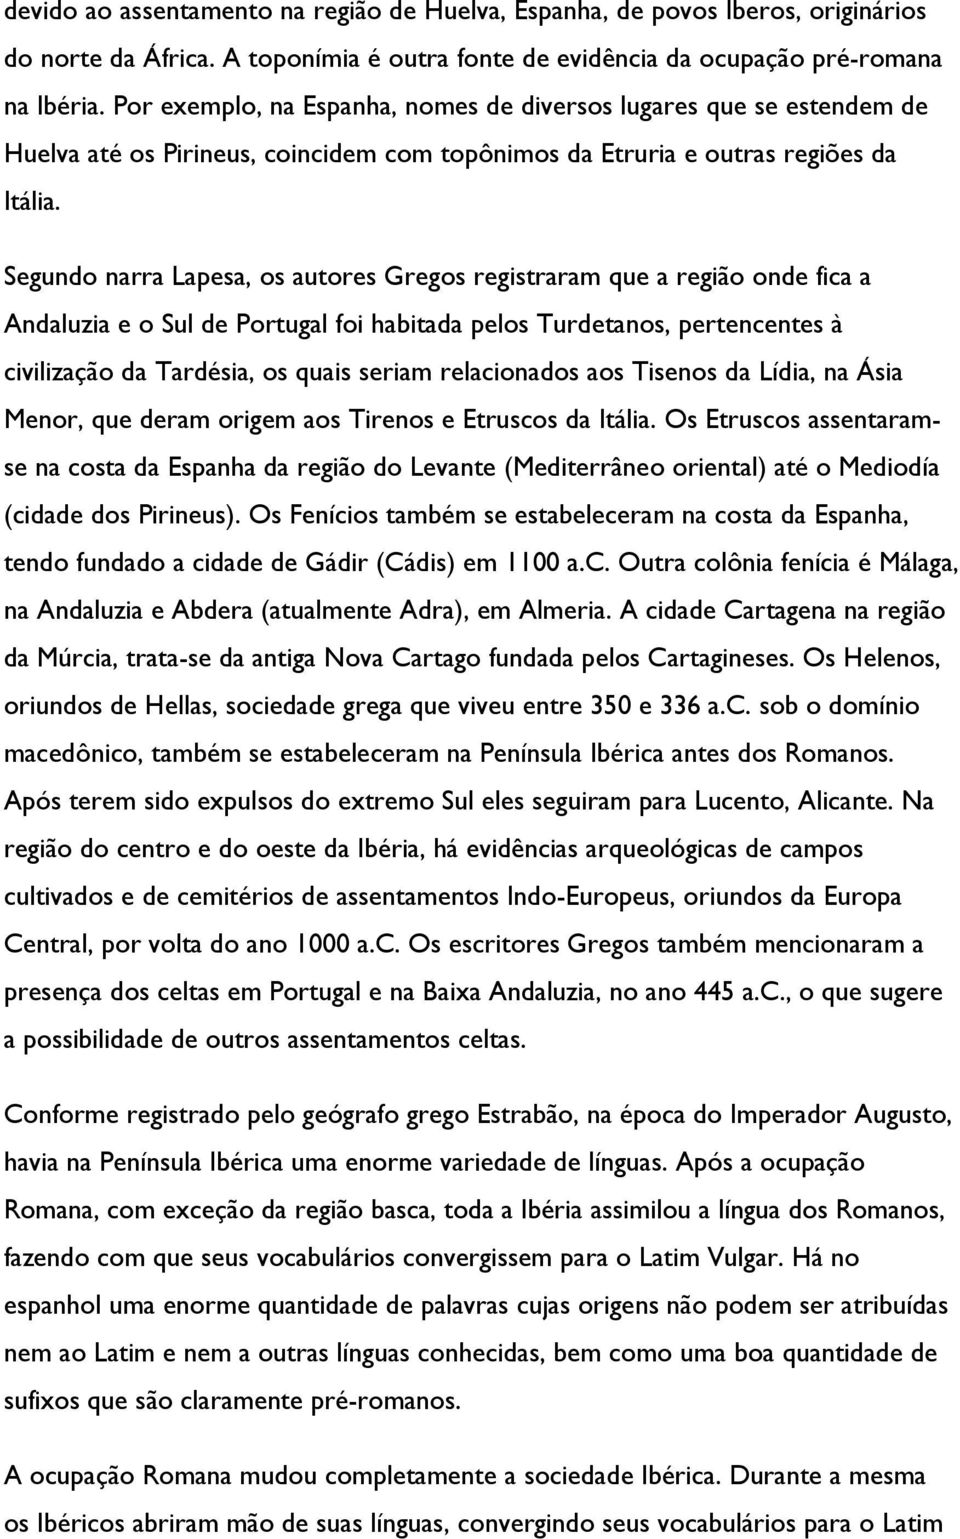 Segundo narra Lapesa, os autores Gregos registraram que a região onde fica a Andaluzia e o Sul de Portugal foi habitada pelos Turdetanos, pertencentes à civilização da Tardésia, os quais seriam